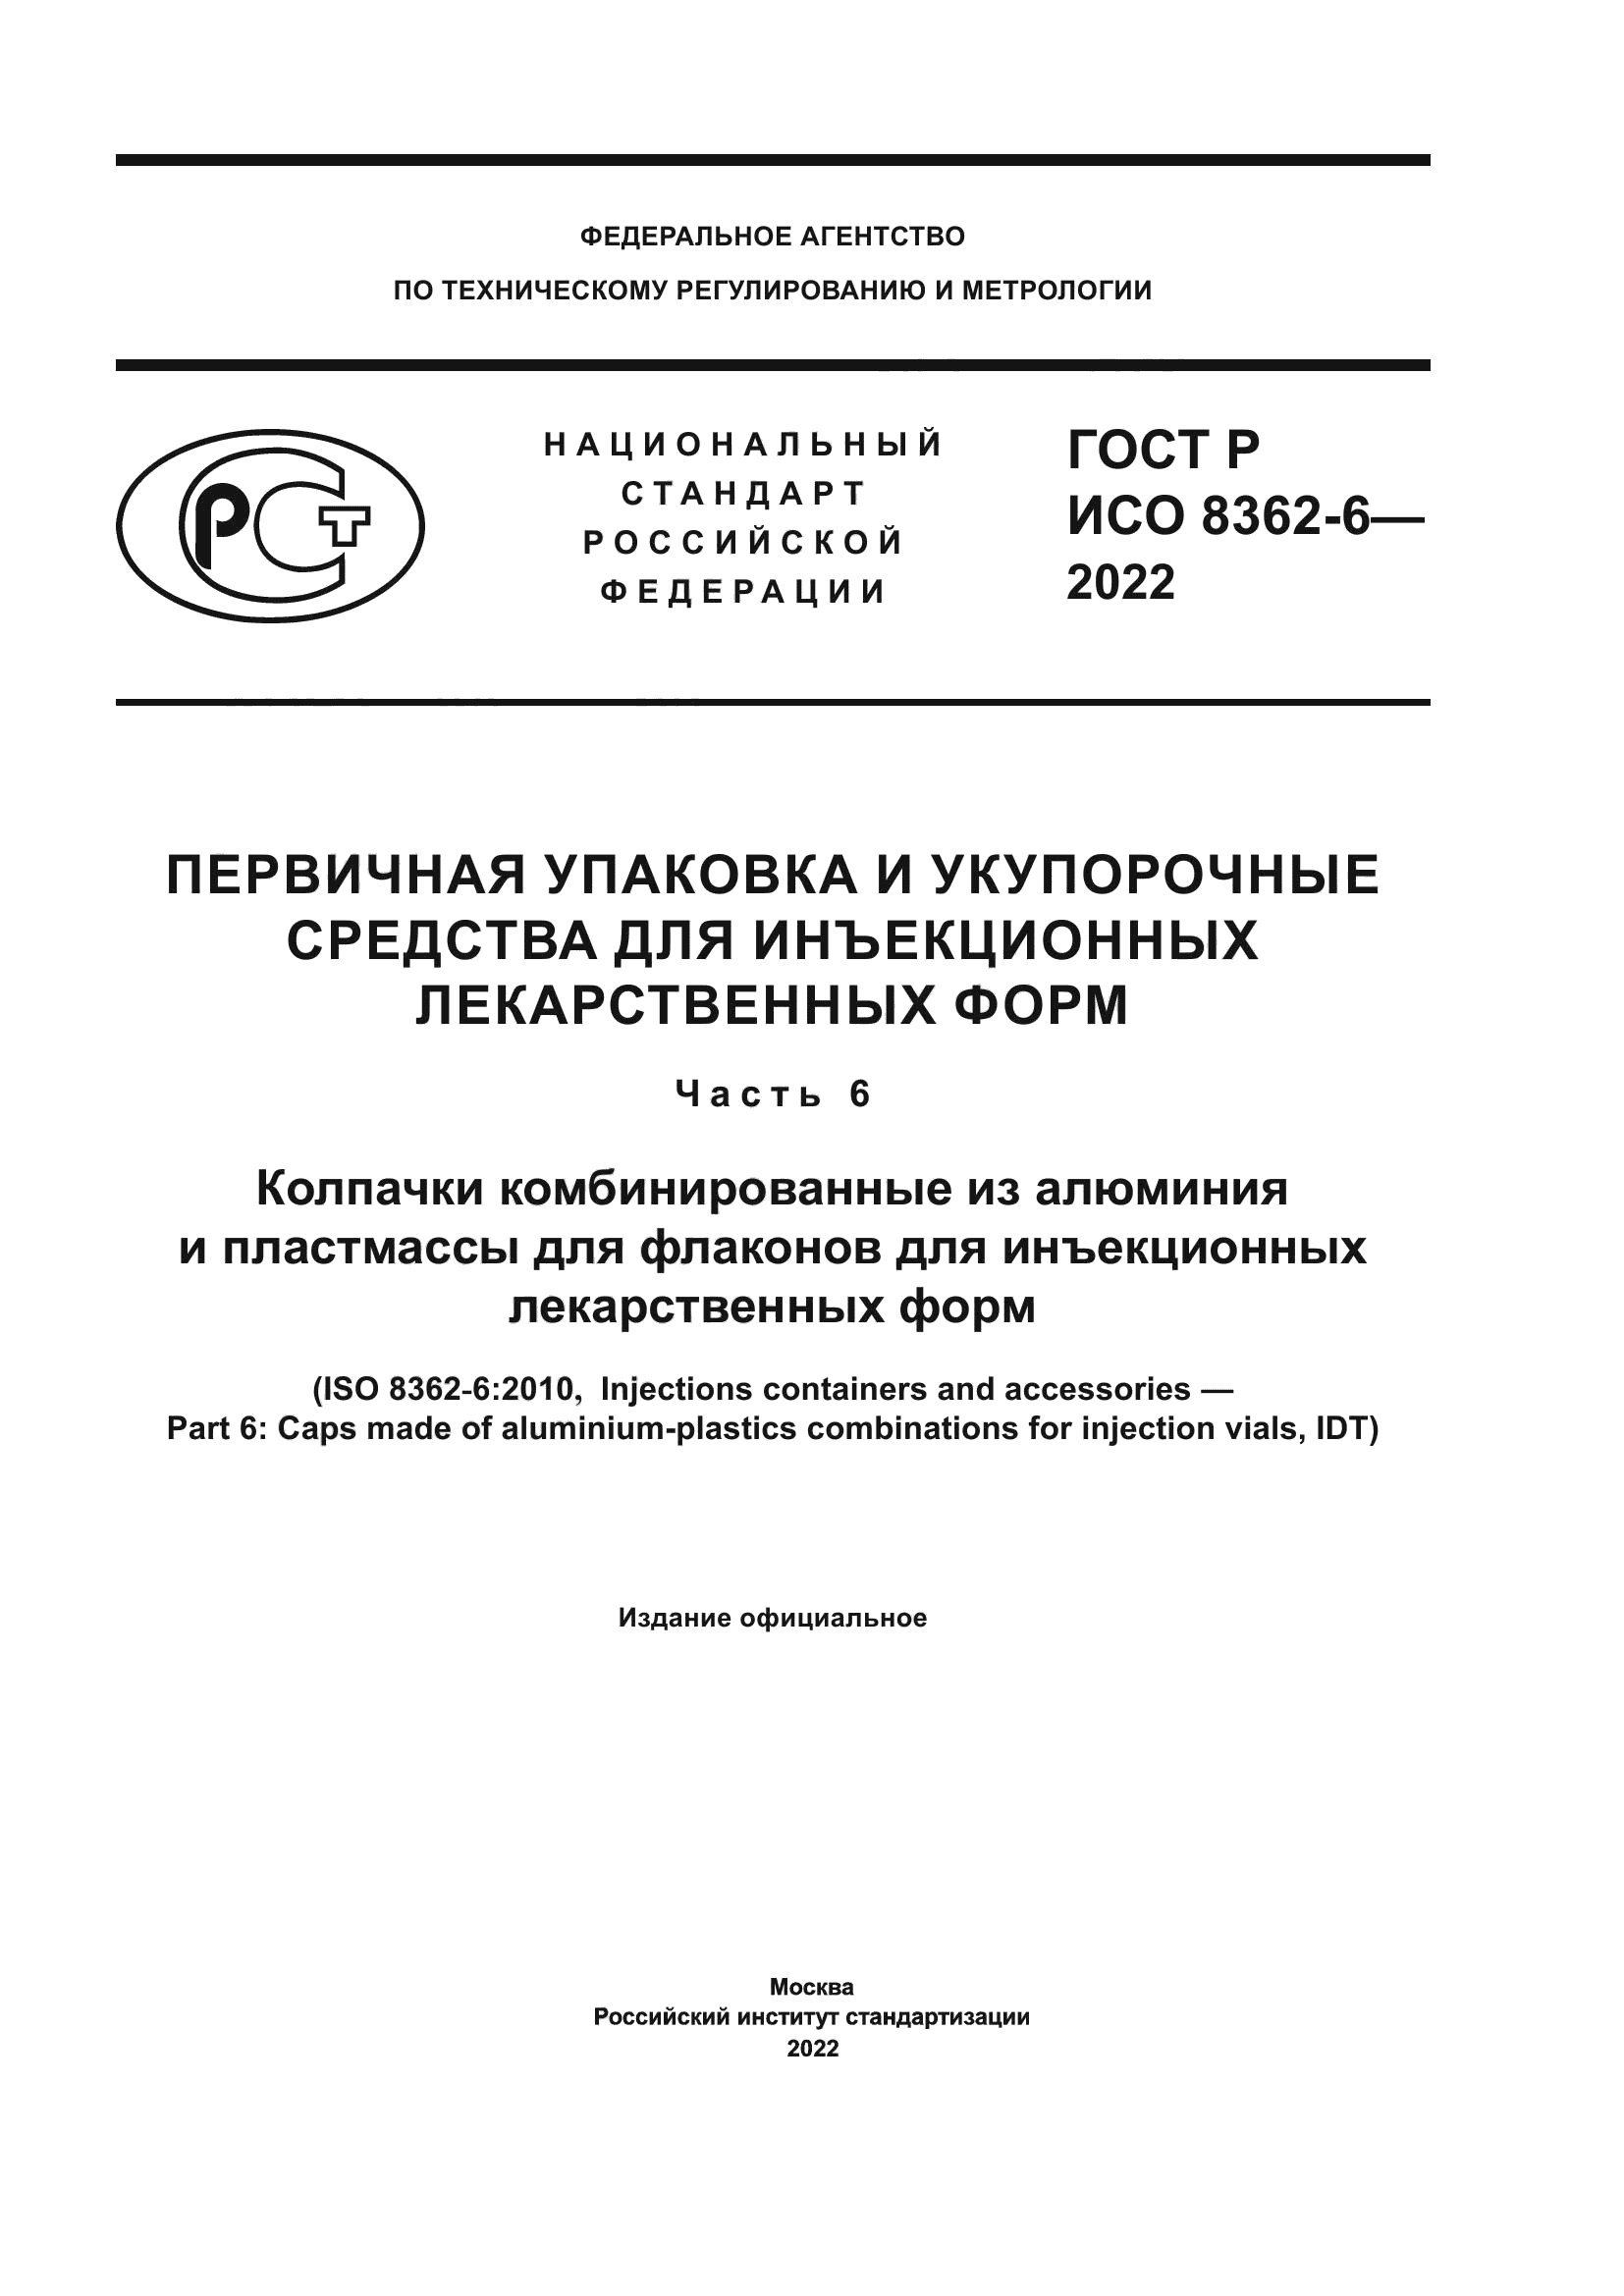 ГОСТ Р ИСО 8362-6-2022